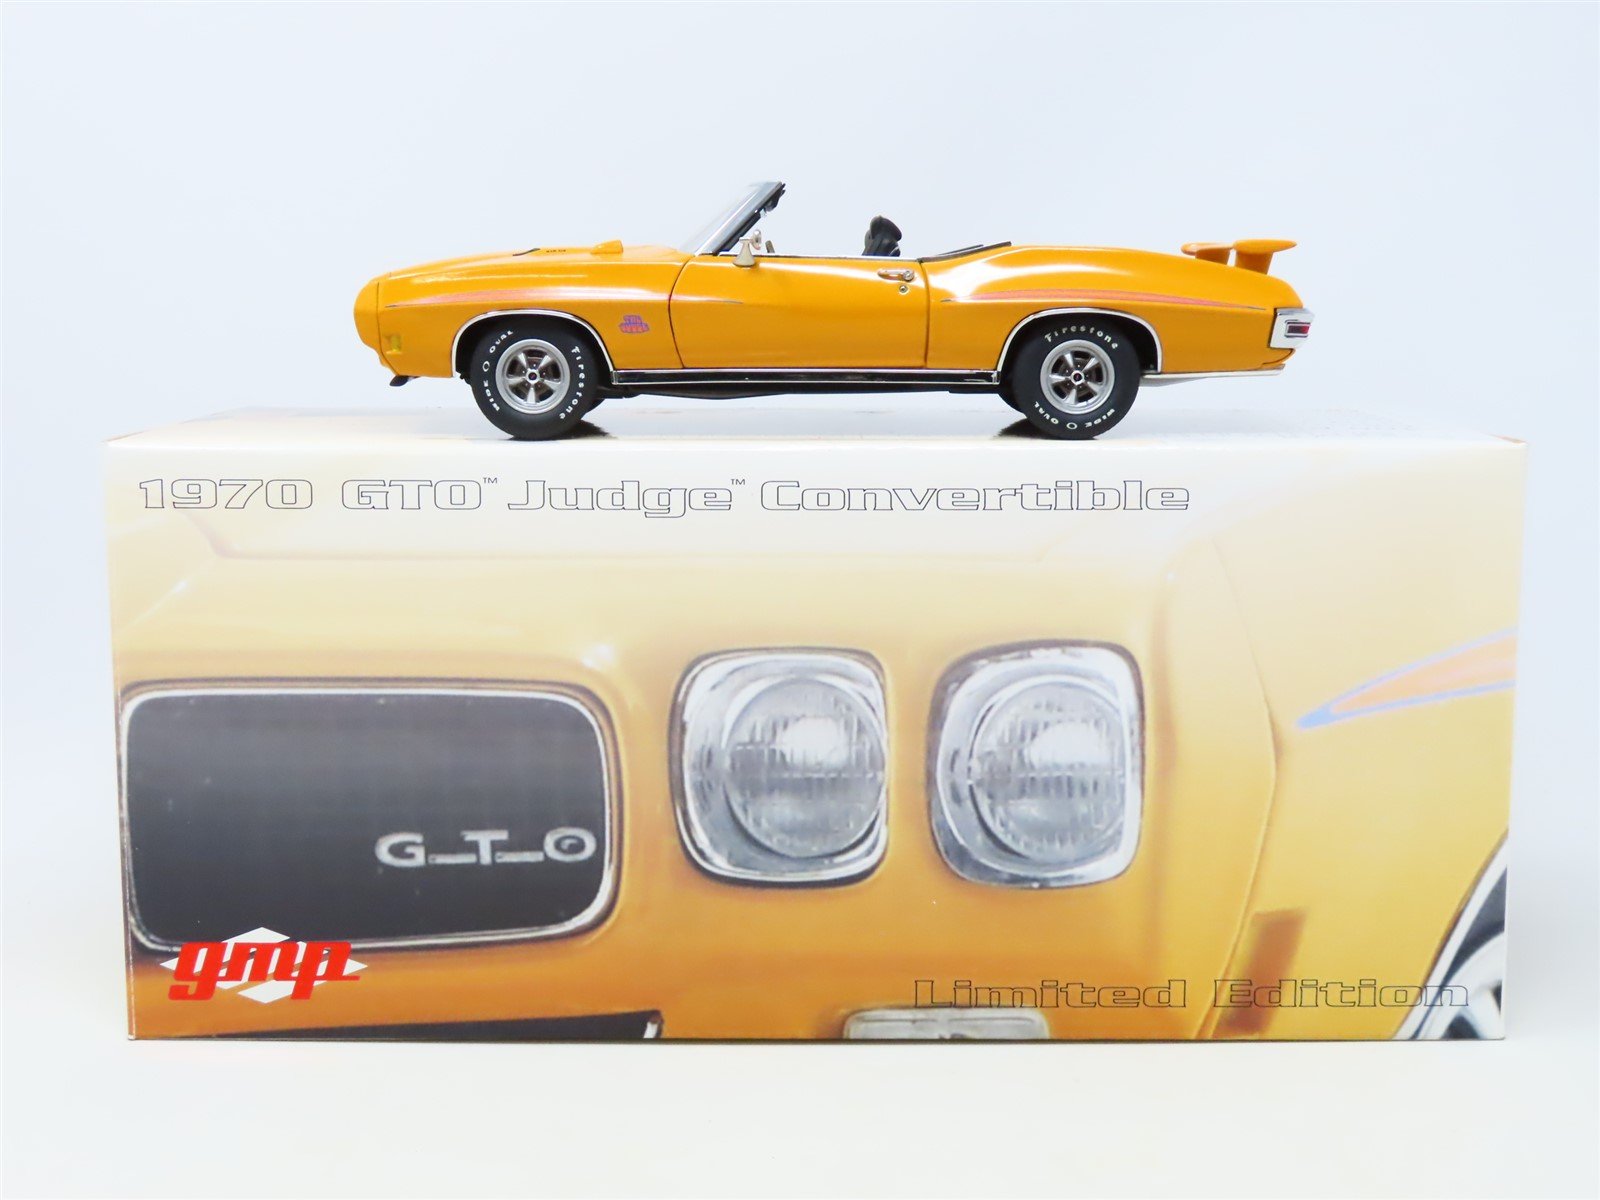 1:24 Scale GMP #8241 Model Car 1970 GTO Judge Convertible - Orange